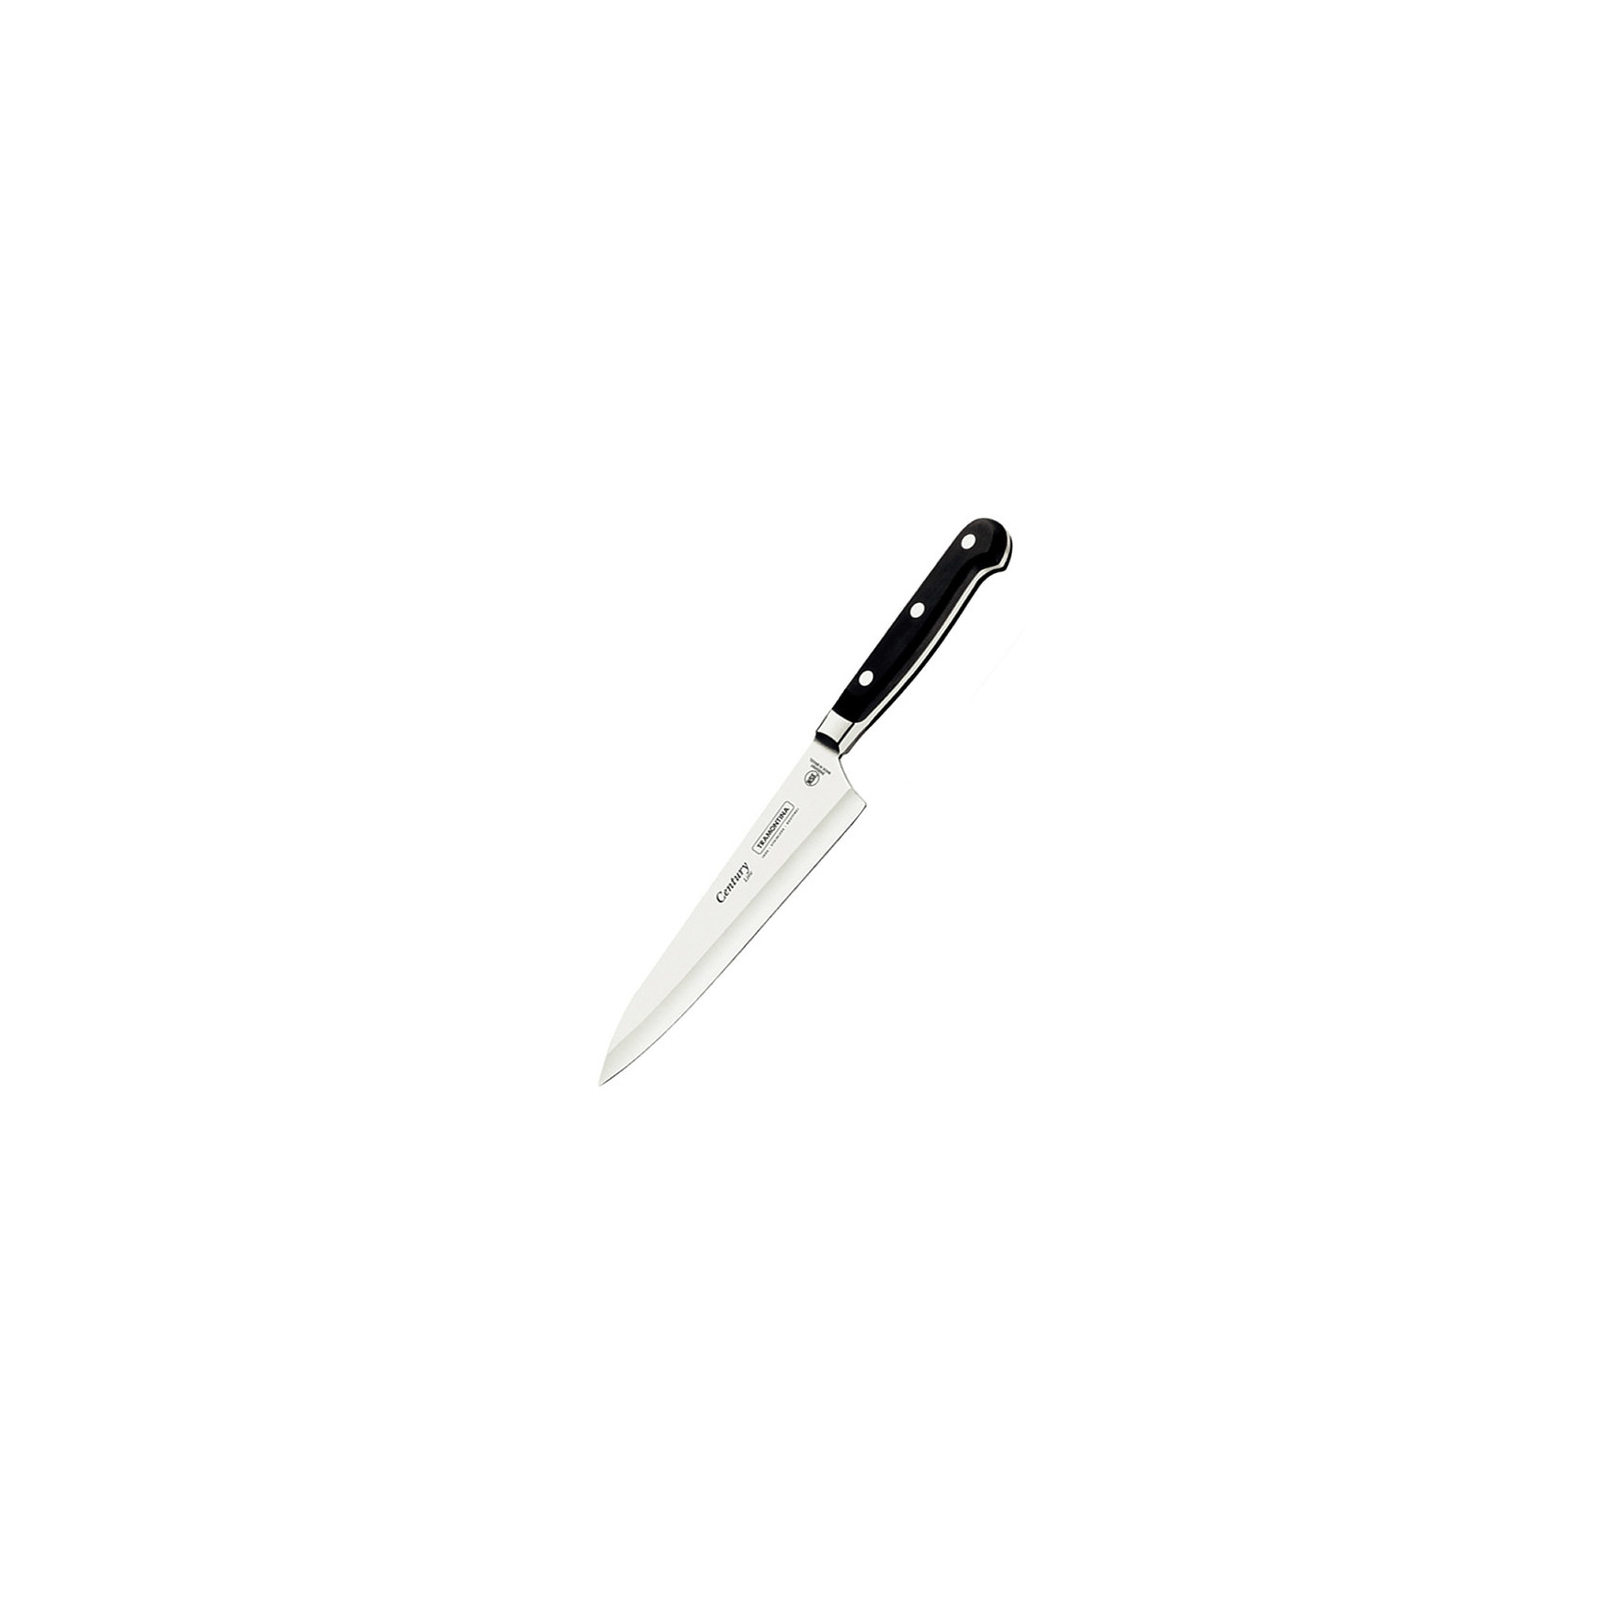 Кухонный нож Tramontina Century универсальный 152 мм Black (24007/106)